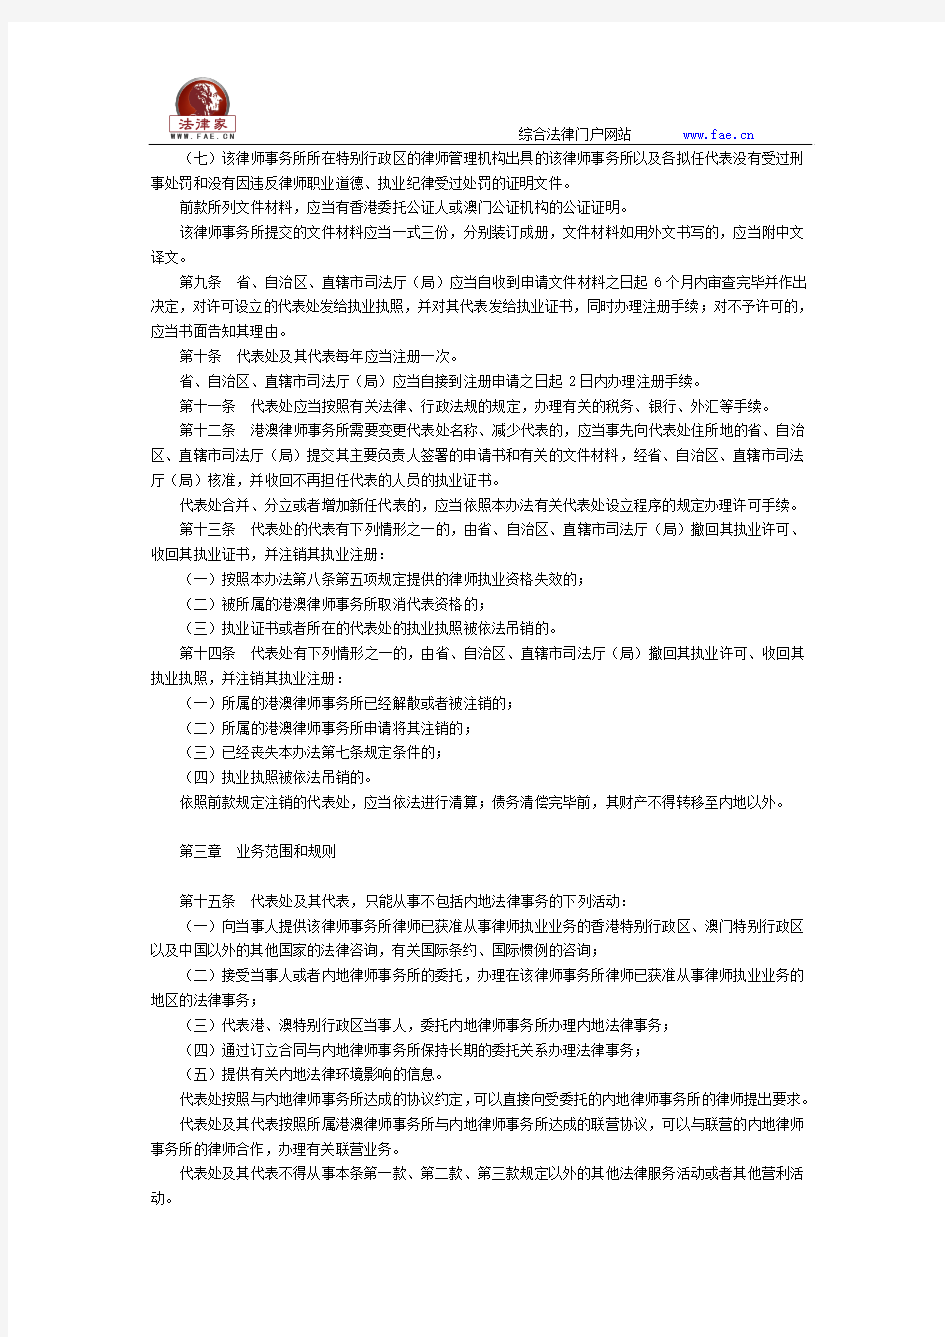 香港、澳门特别行政区律师事务所驻内地代表机构管理办法(2015年)全文--国务院部委规章